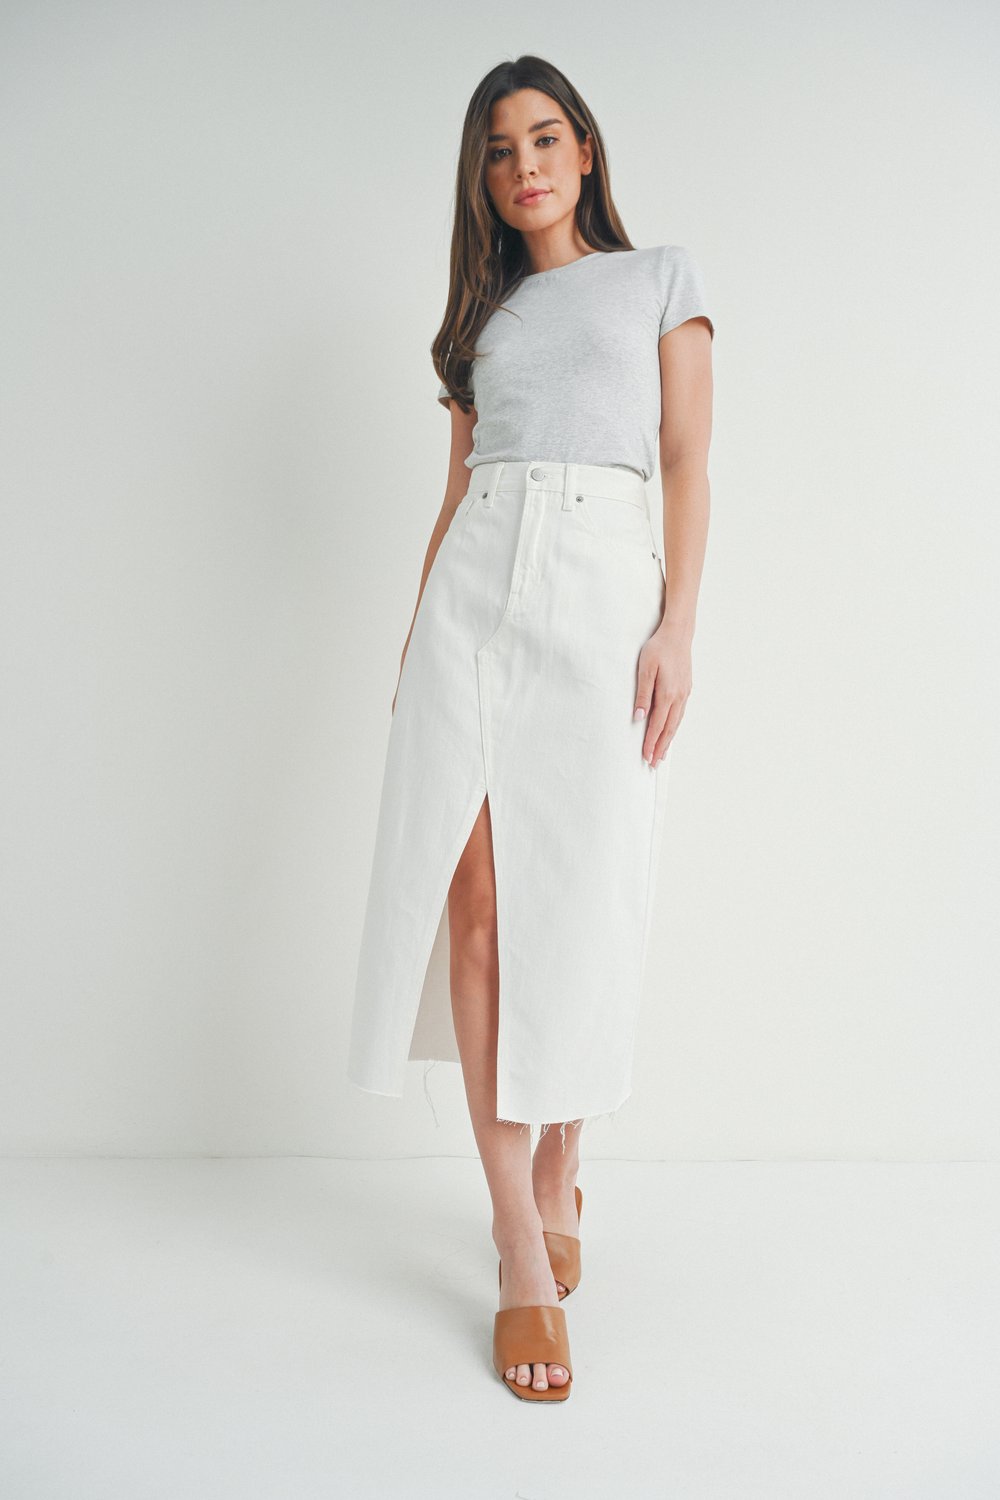 Open Slit Midi Skirt in White from Just Black Denim